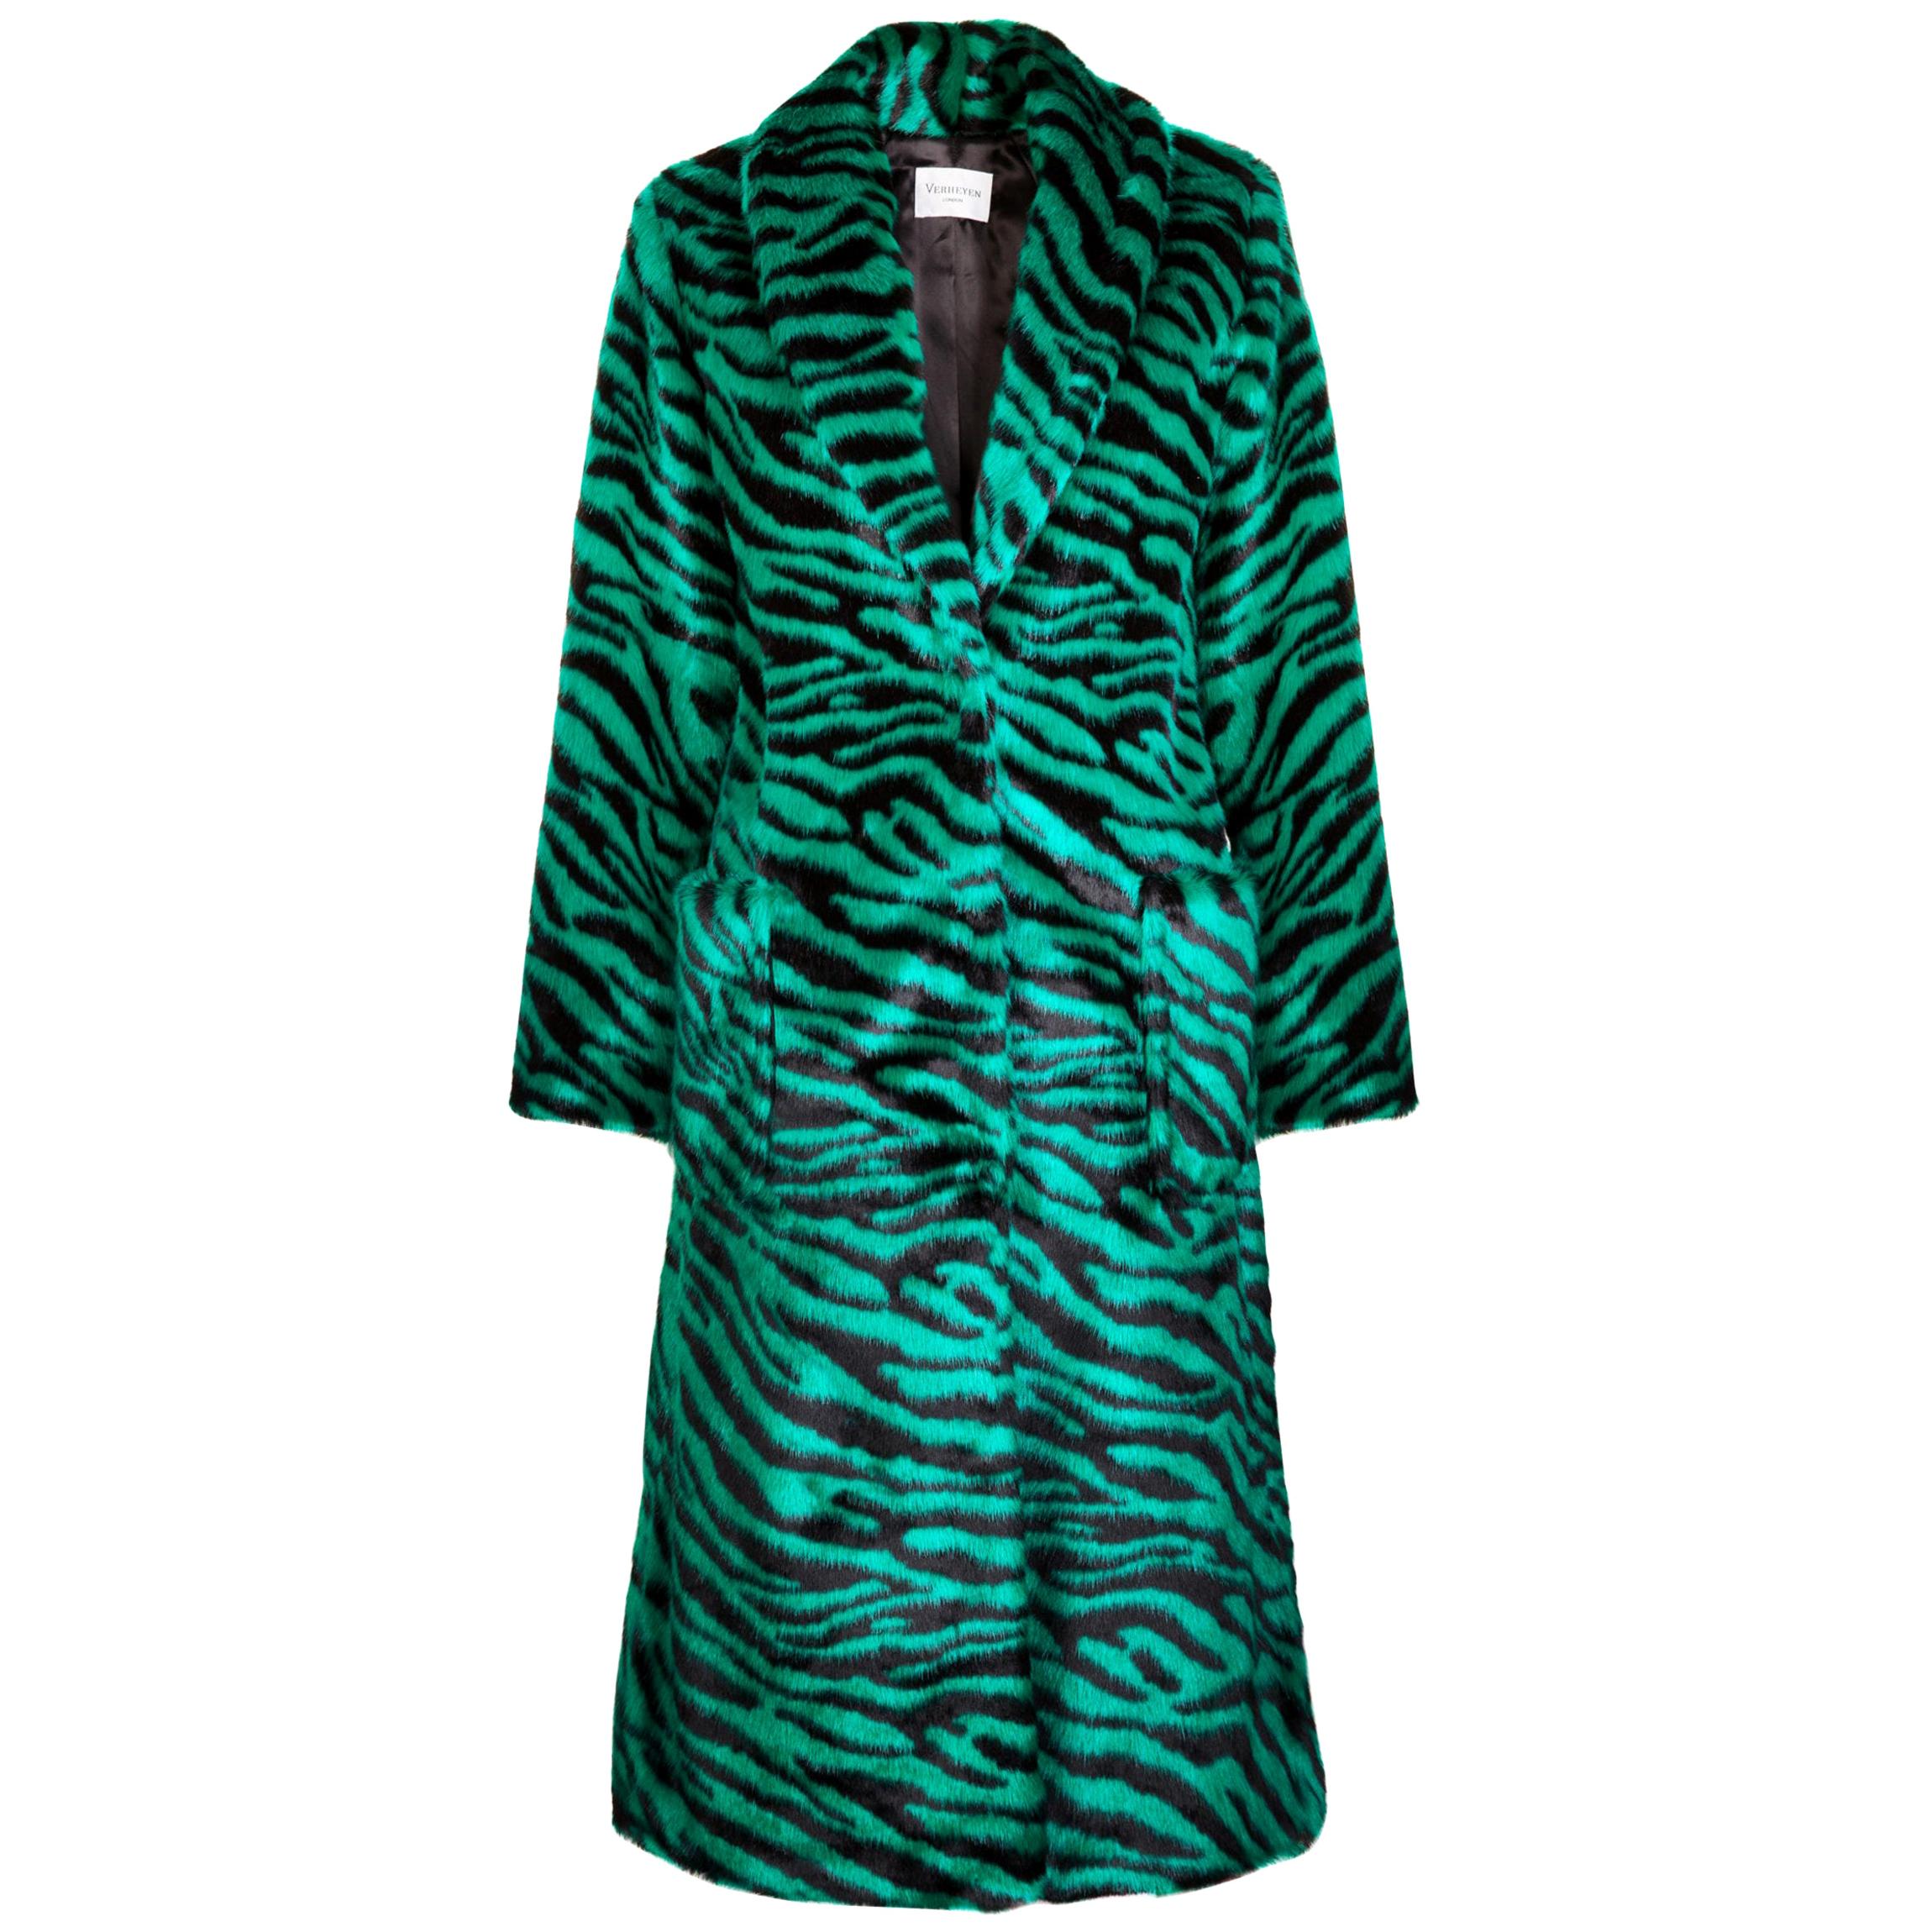 Verheyen London Esmeralda Faux Fur Coat in Emerald Green Zebra Print size uk 8